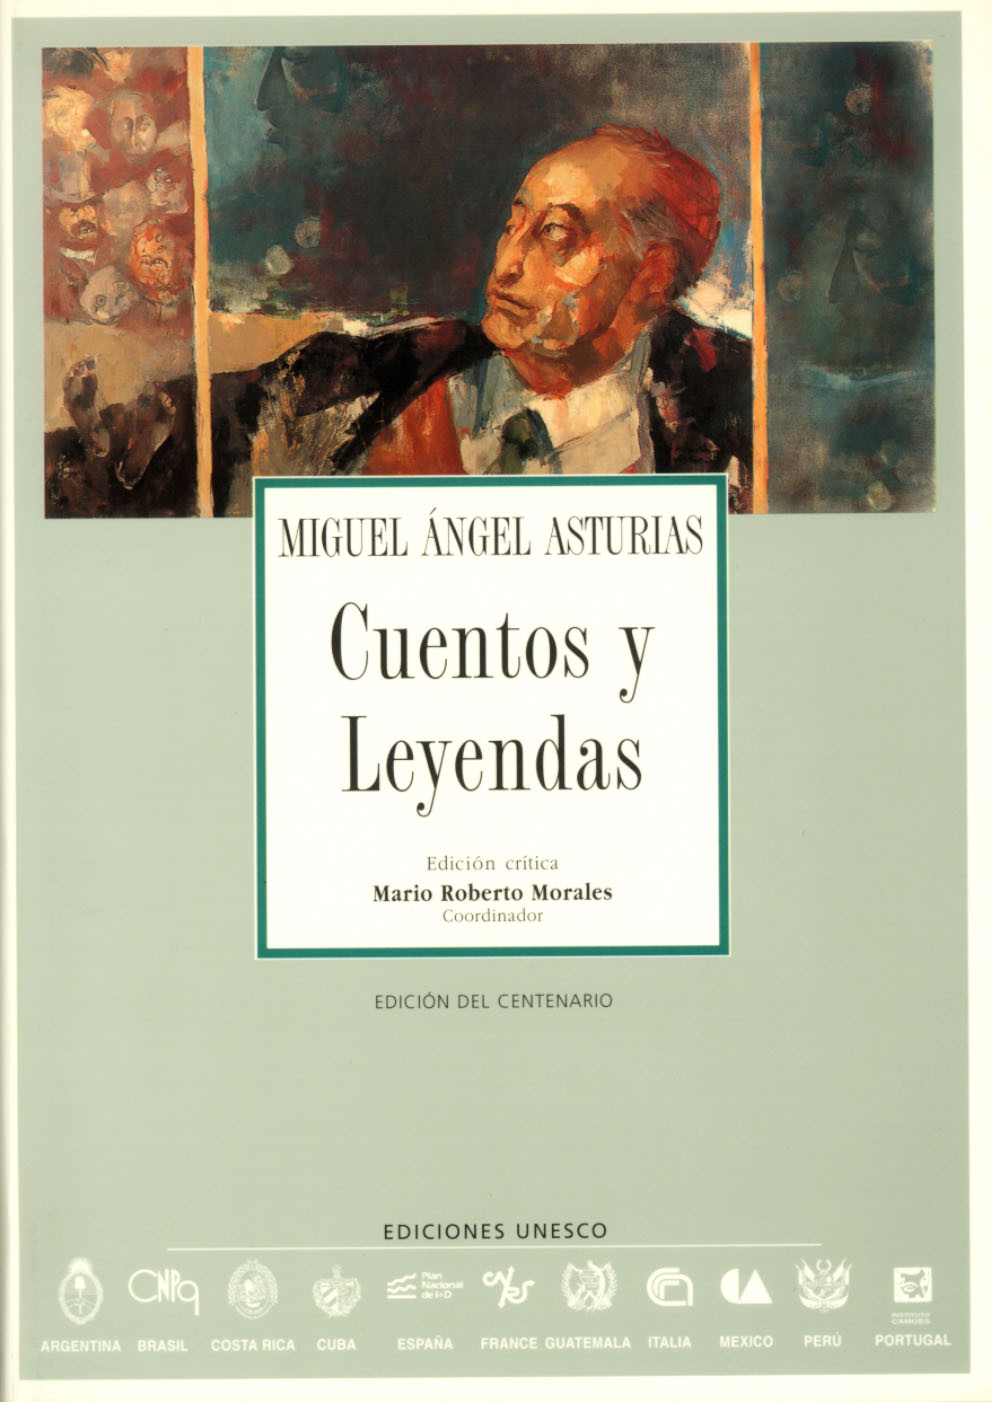 Cuentos y leyendas de Miguel Angel Asturias - DL Services - UNESCO, OECD &  UN publication store